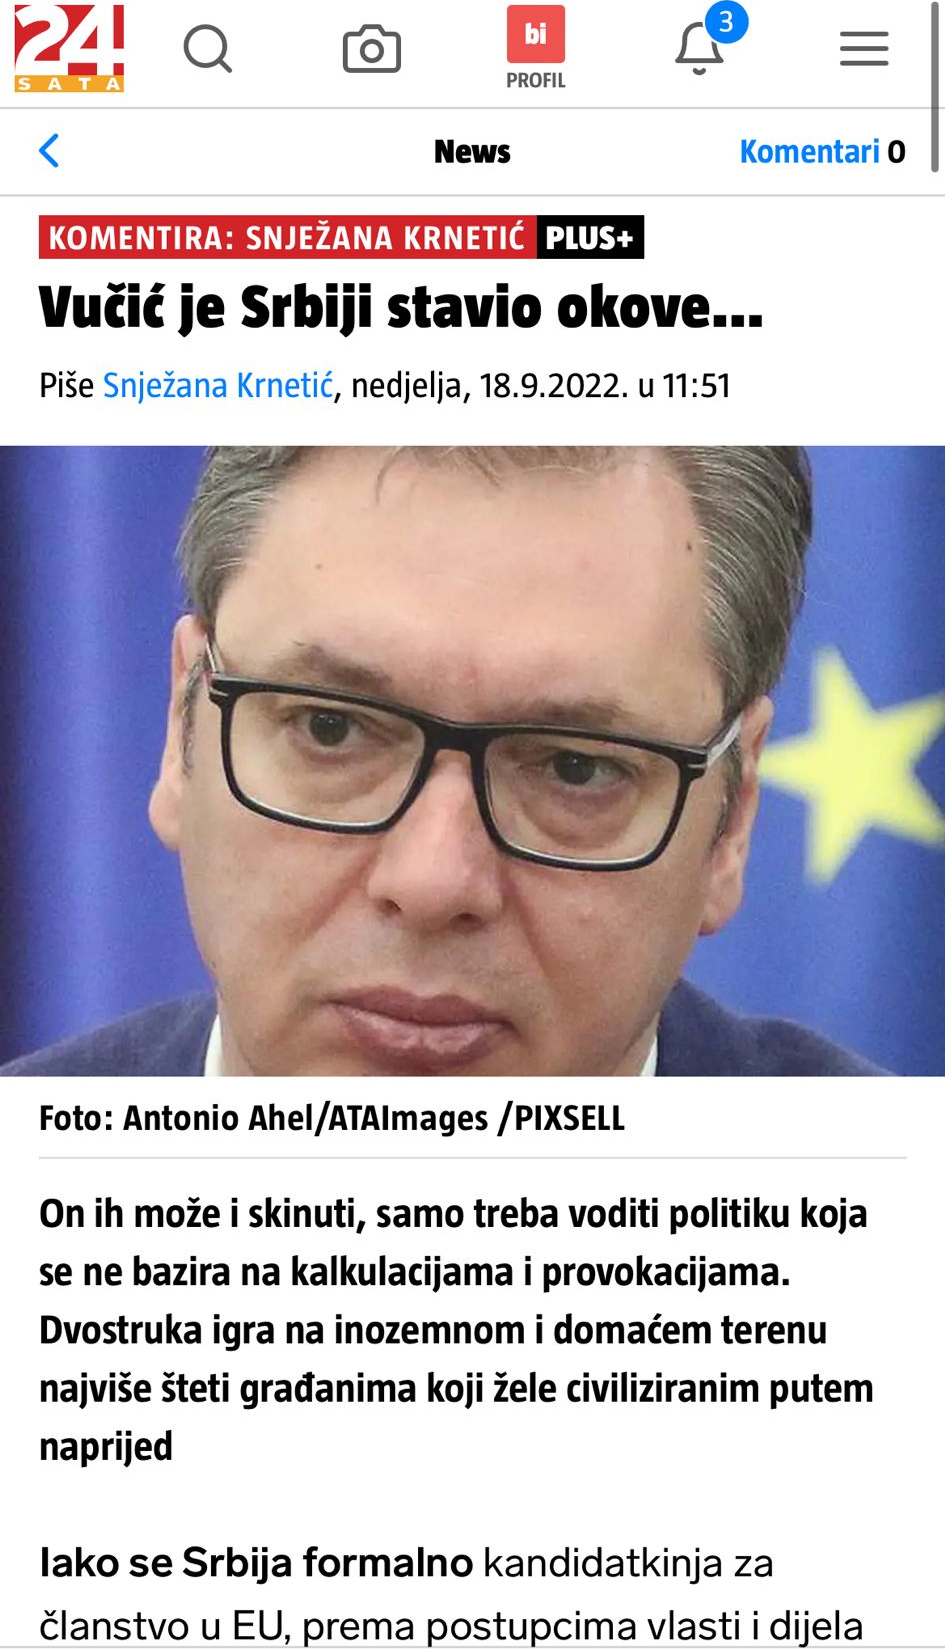 MEDIJSKI NAPADI IZ HRVATSKE SVE JAČI Ustaše žele da Vučić i Srbija kleče pred njima